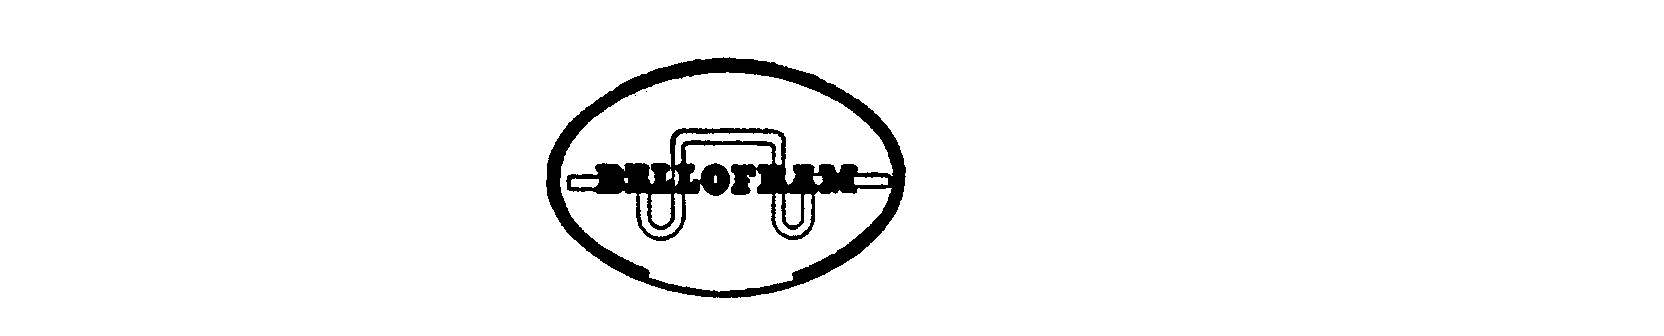 Trademark Logo BELLOFRAM